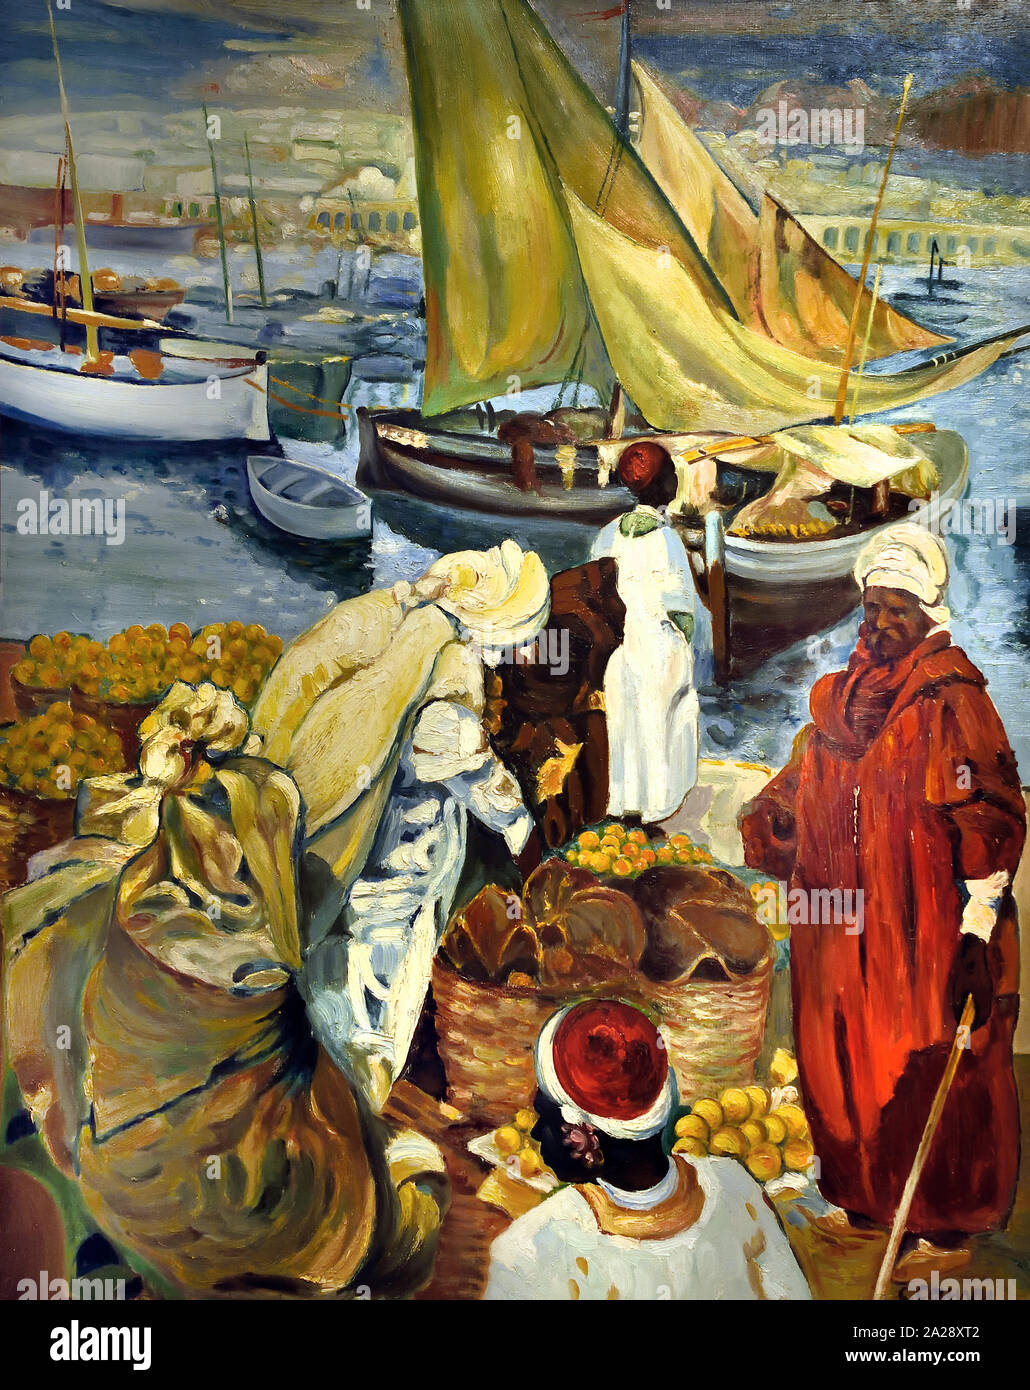 Le port d' colère - Le Port de colère, Marocain, Maroc. par Léon Cauvy 1874 - 1933 Peintre orientaliste français. Banque D'Images